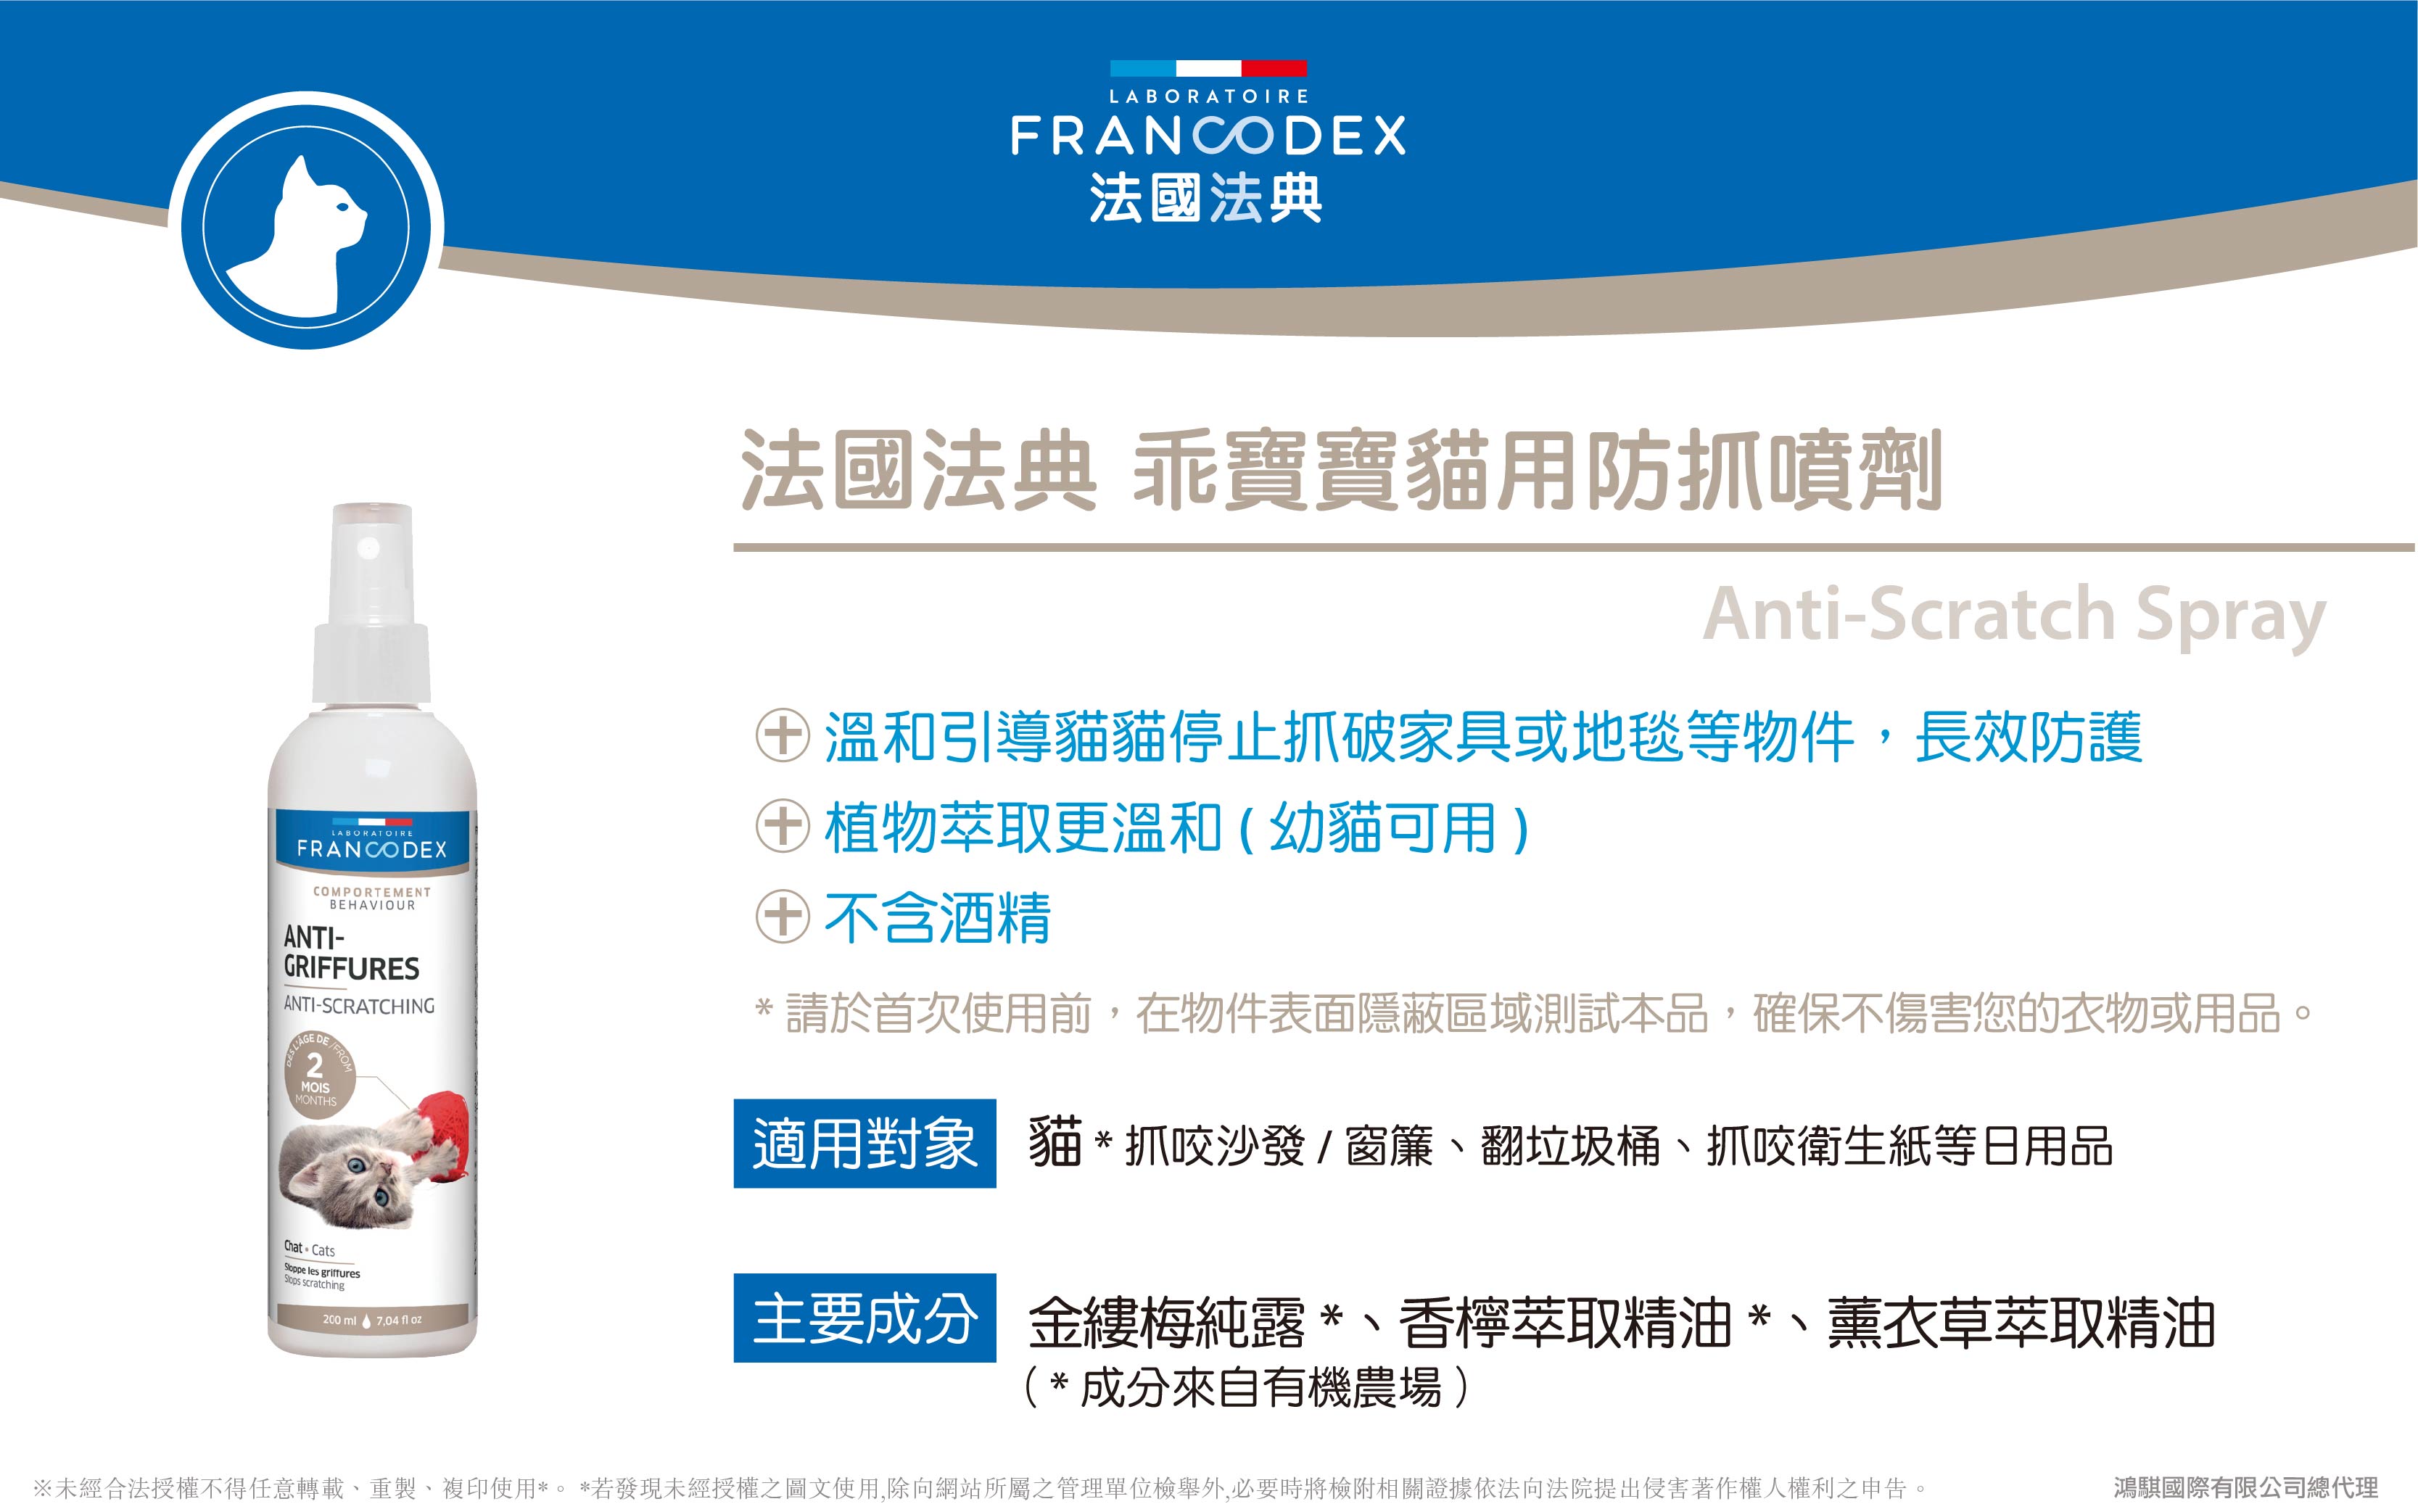 【Francodex】官網-產品介紹_30法國法典乖寶寶貓用防抓噴劑